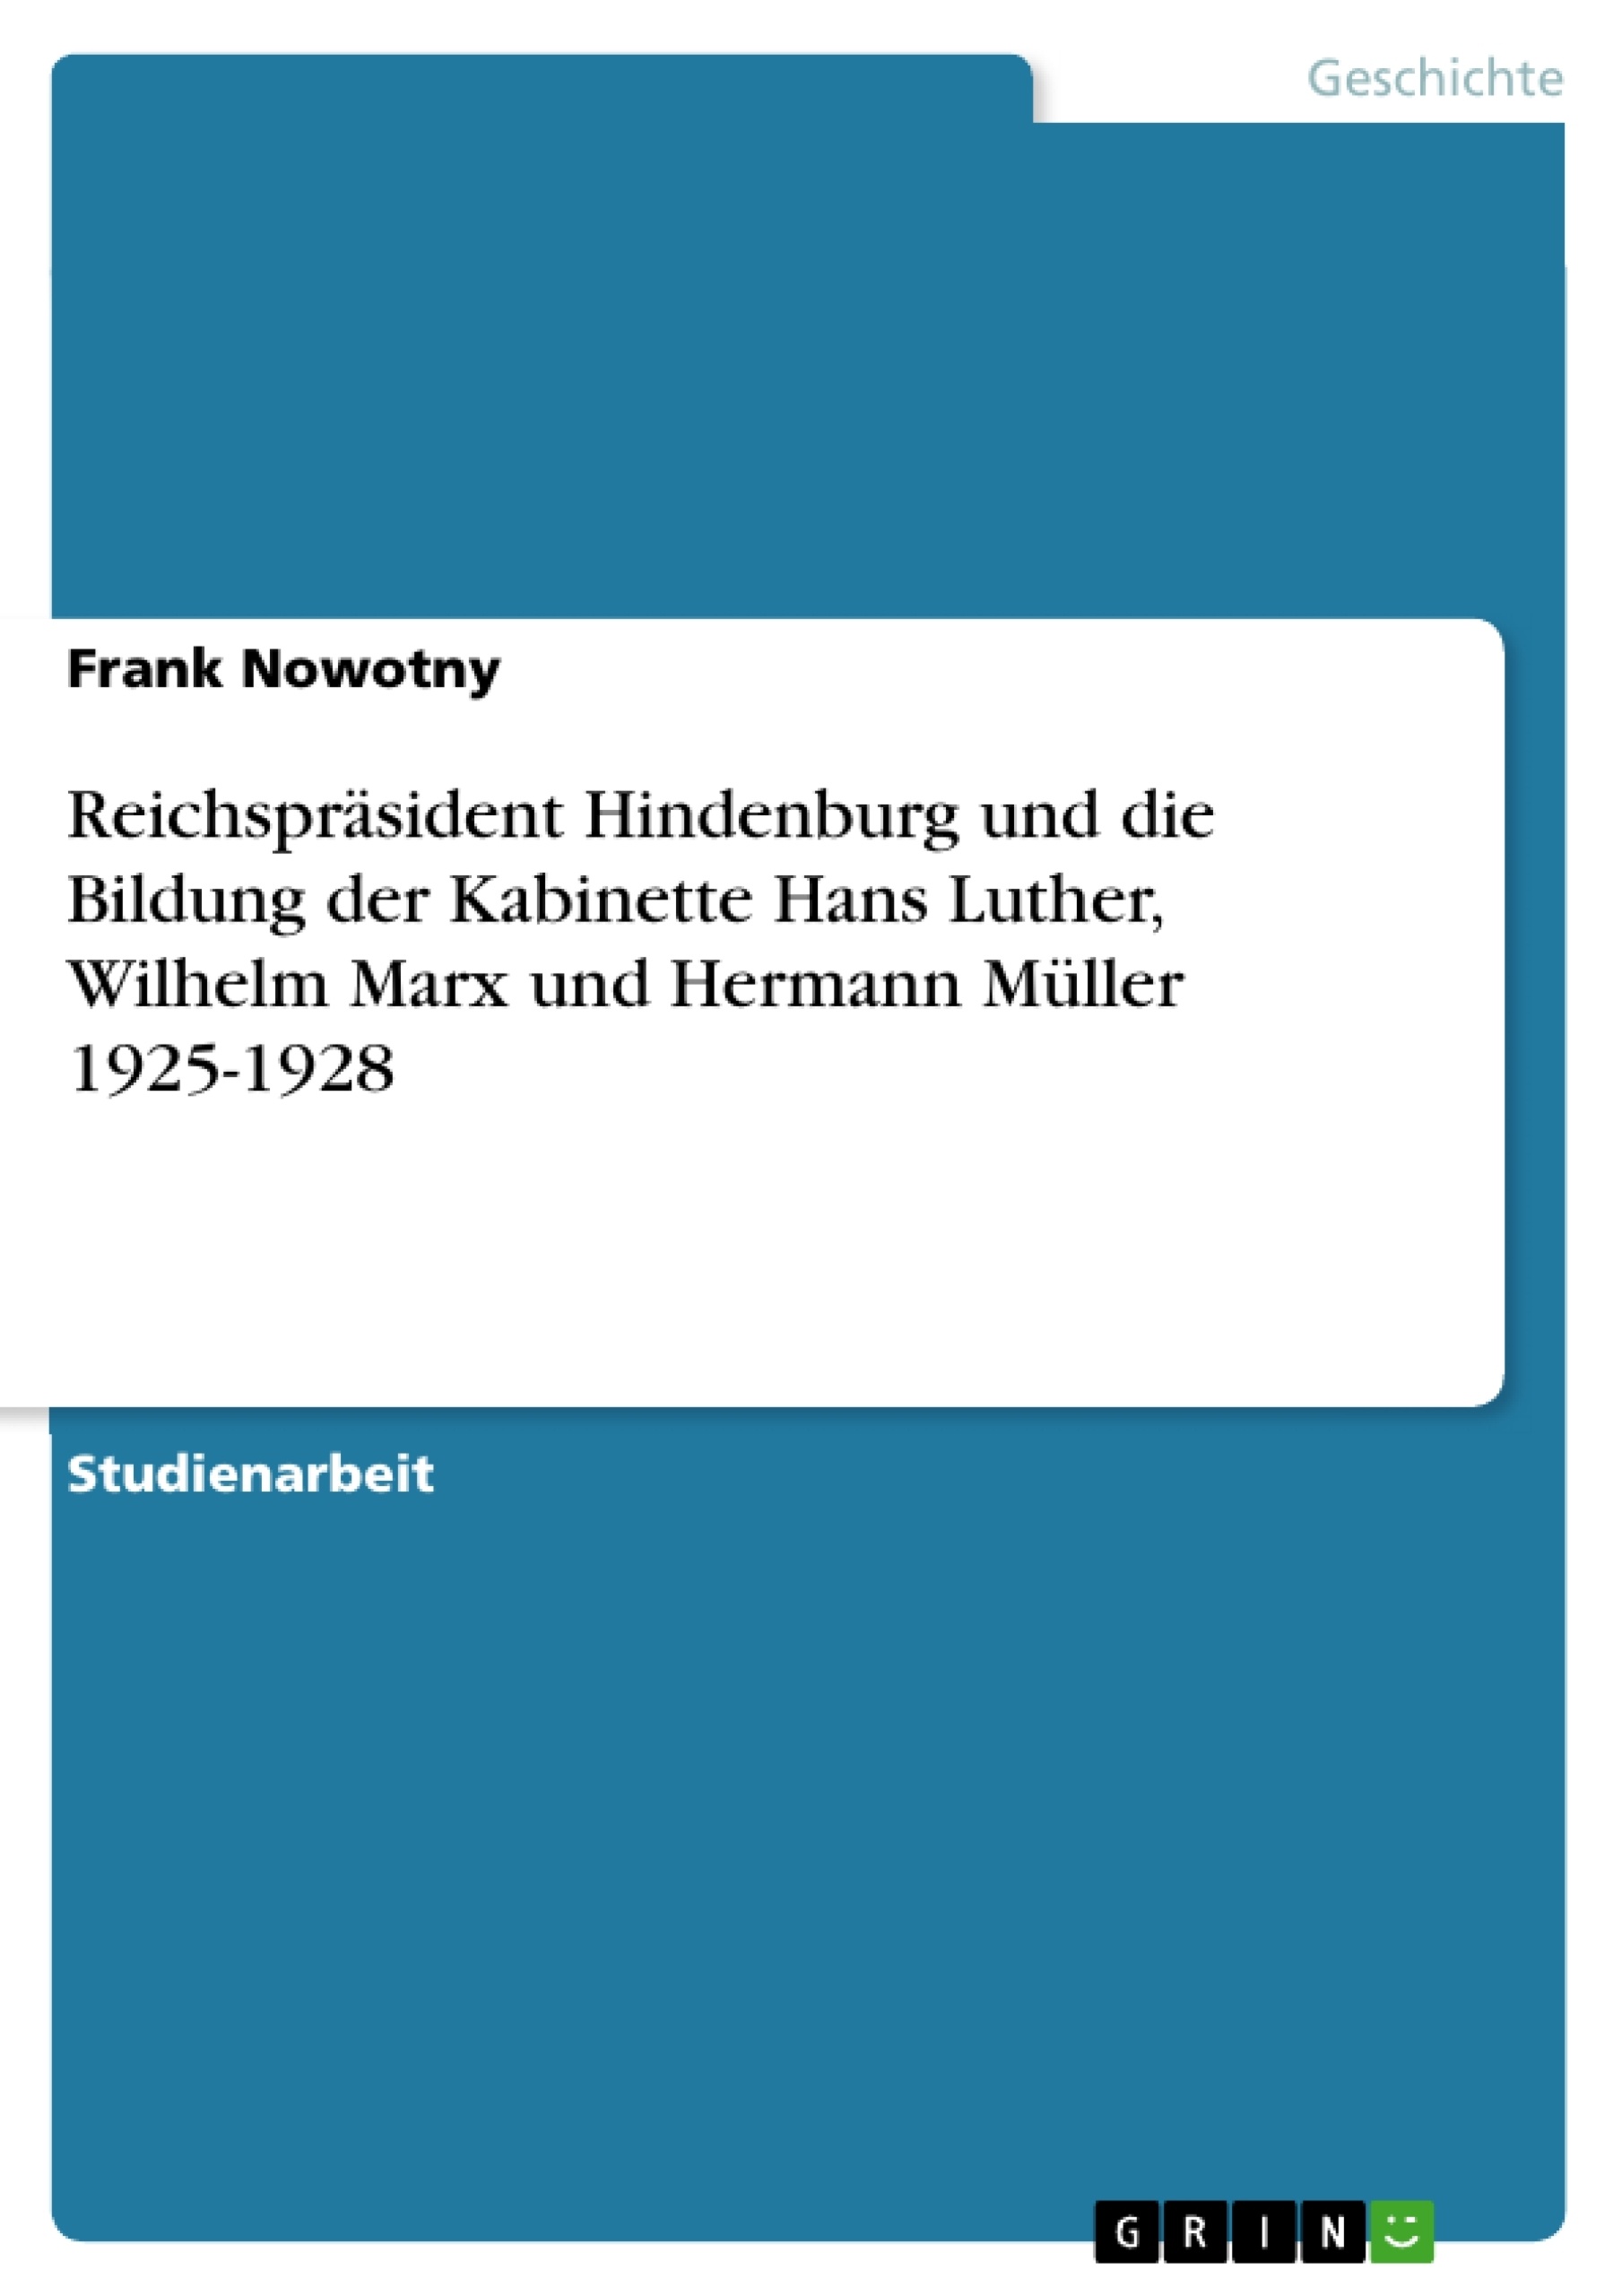 Title: Reichspräsident Hindenburg und die Bildung der Kabinette Hans Luther, Wilhelm Marx und Hermann Müller 1925-1928